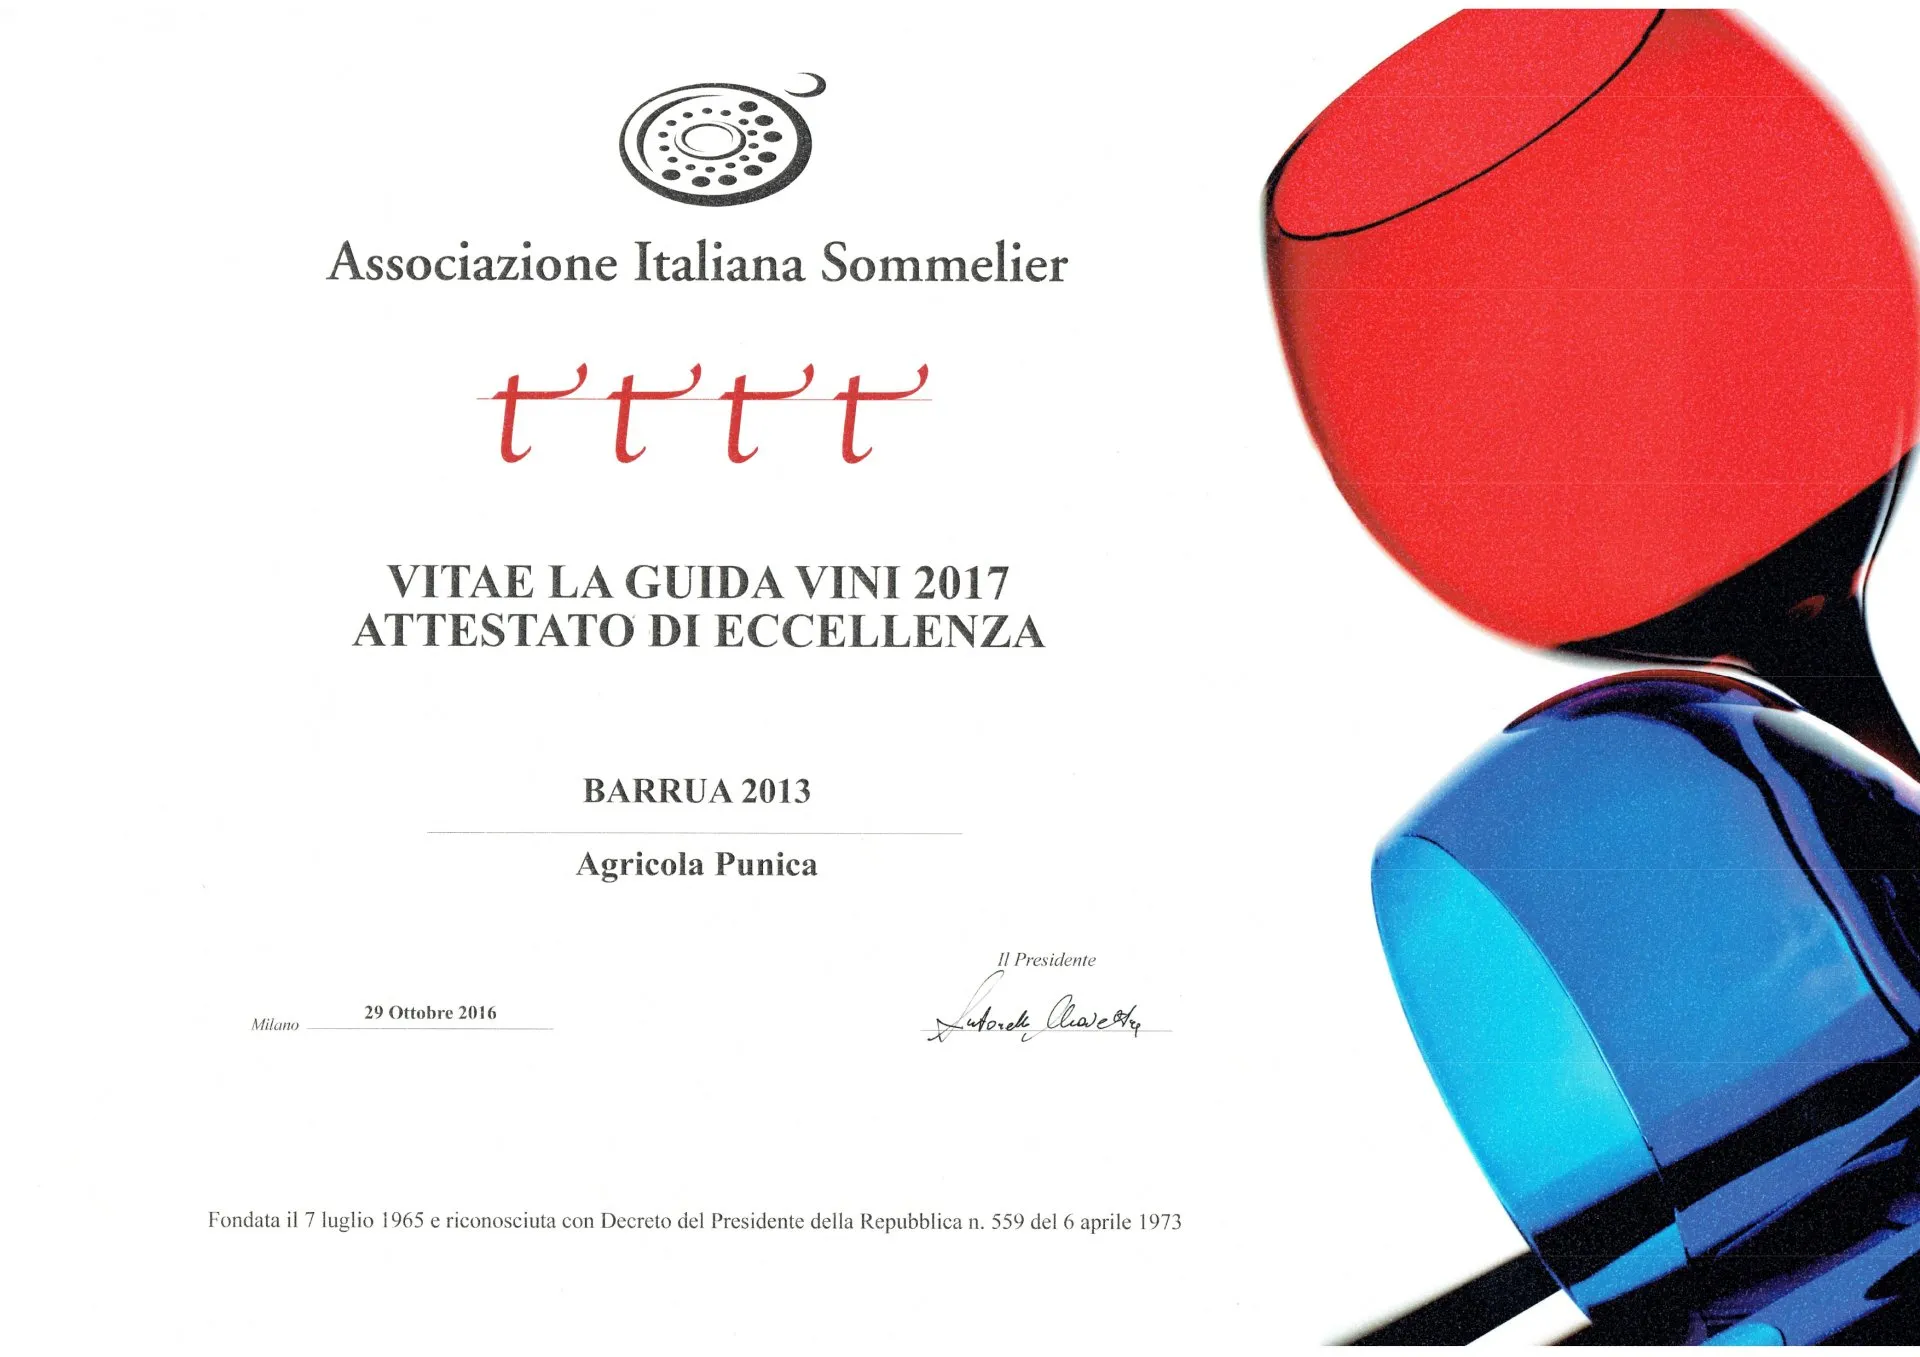 Associazione Italiana Sommelier - Attestato di eccellenza 2017